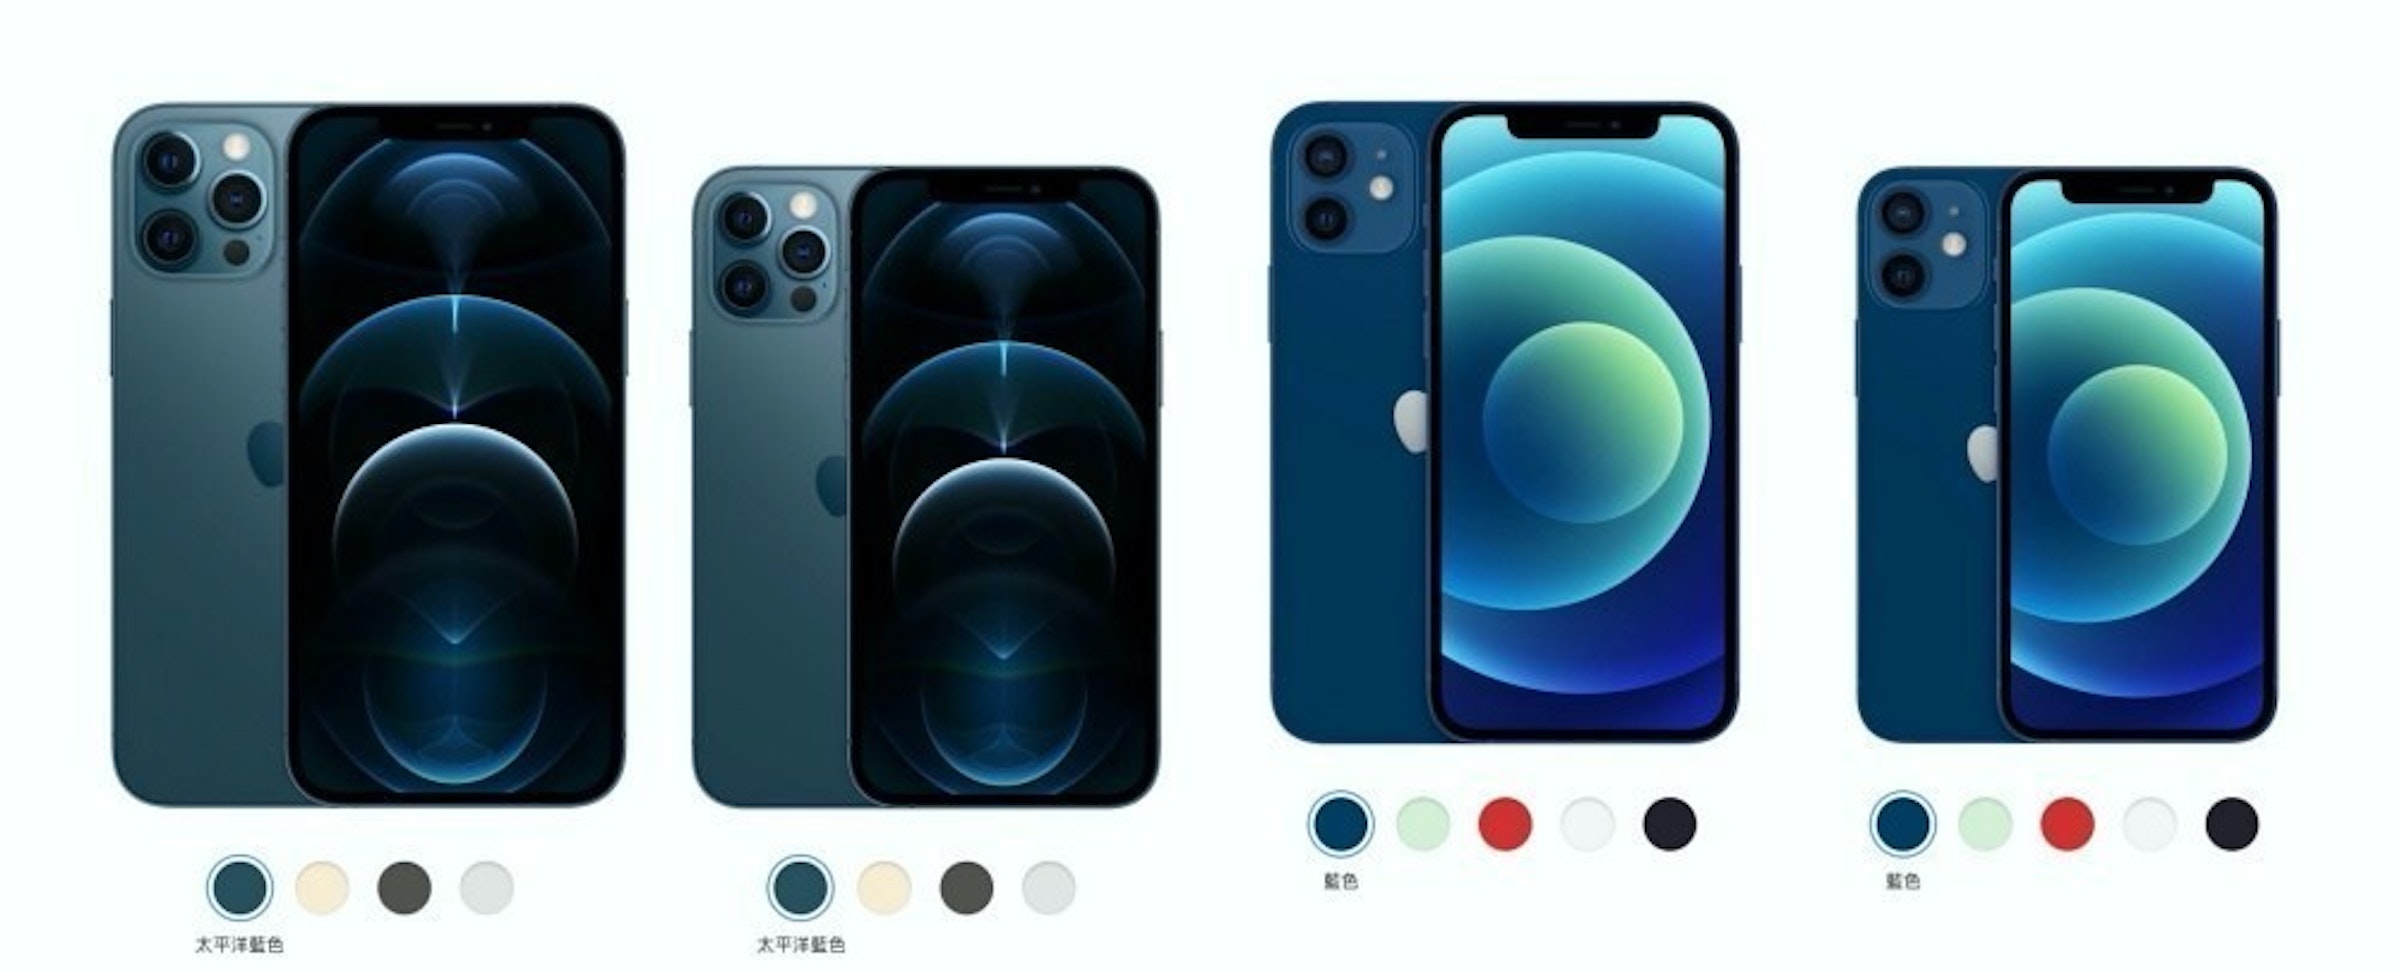 照片中提到了藍色、太平洋藍色、太平洋藍色，包含了蘋果手機、iPhone 4、iPhone 12、iPhone 11、蘋果